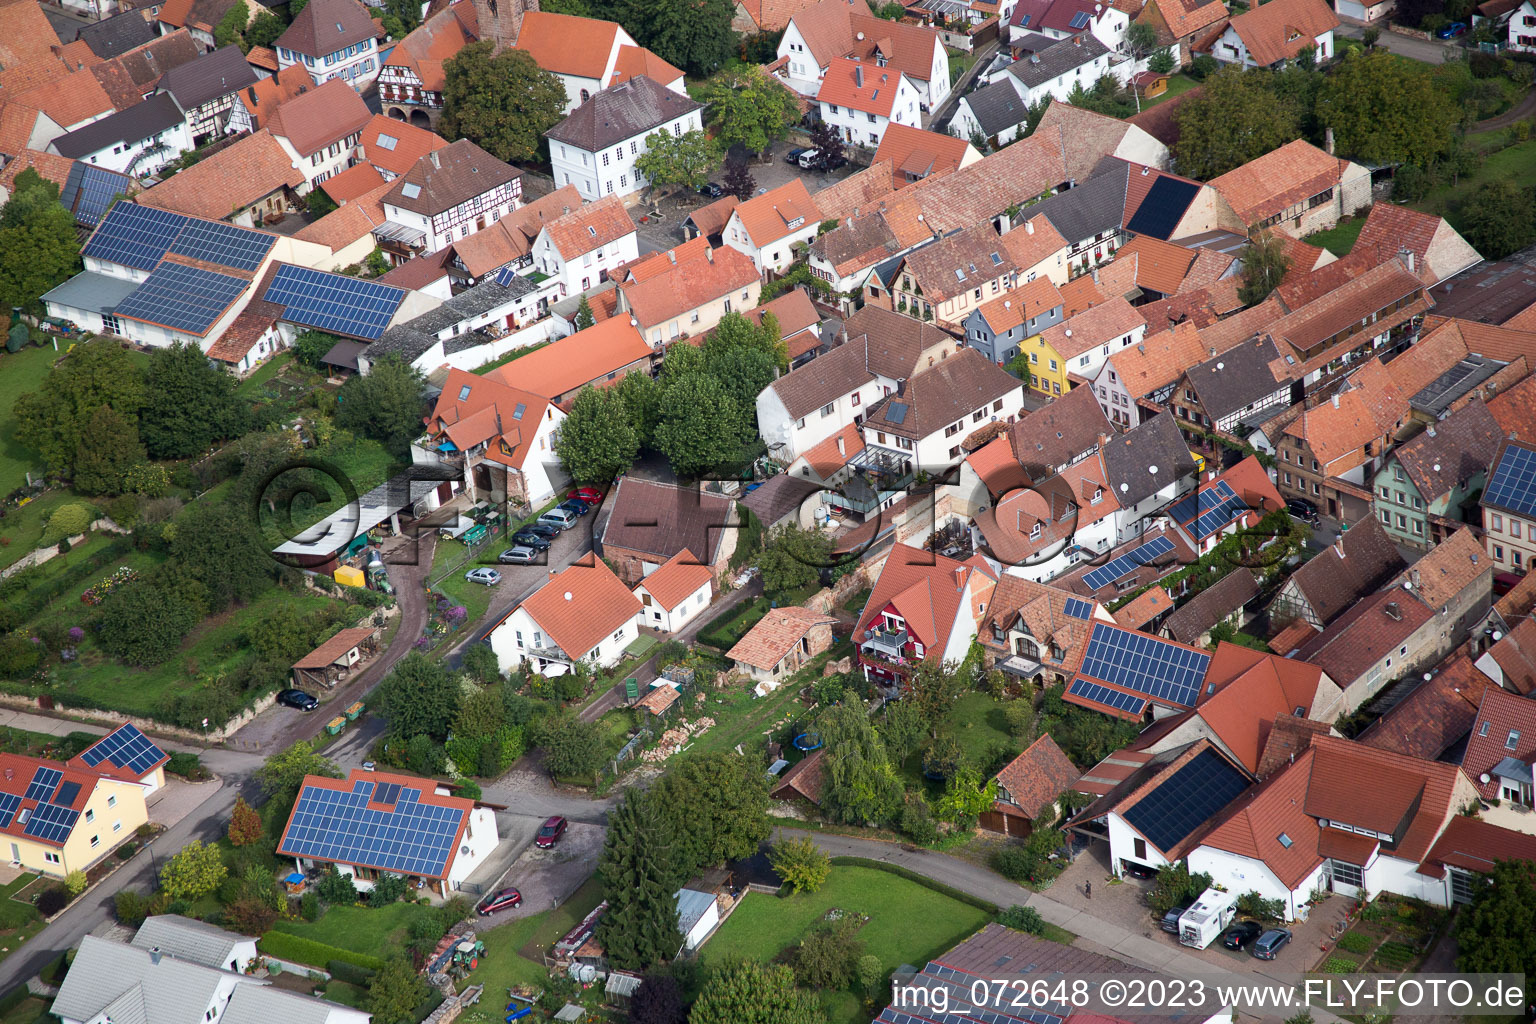 Drone image of District Heuchelheim in Heuchelheim-Klingen in the state Rhineland-Palatinate, Germany